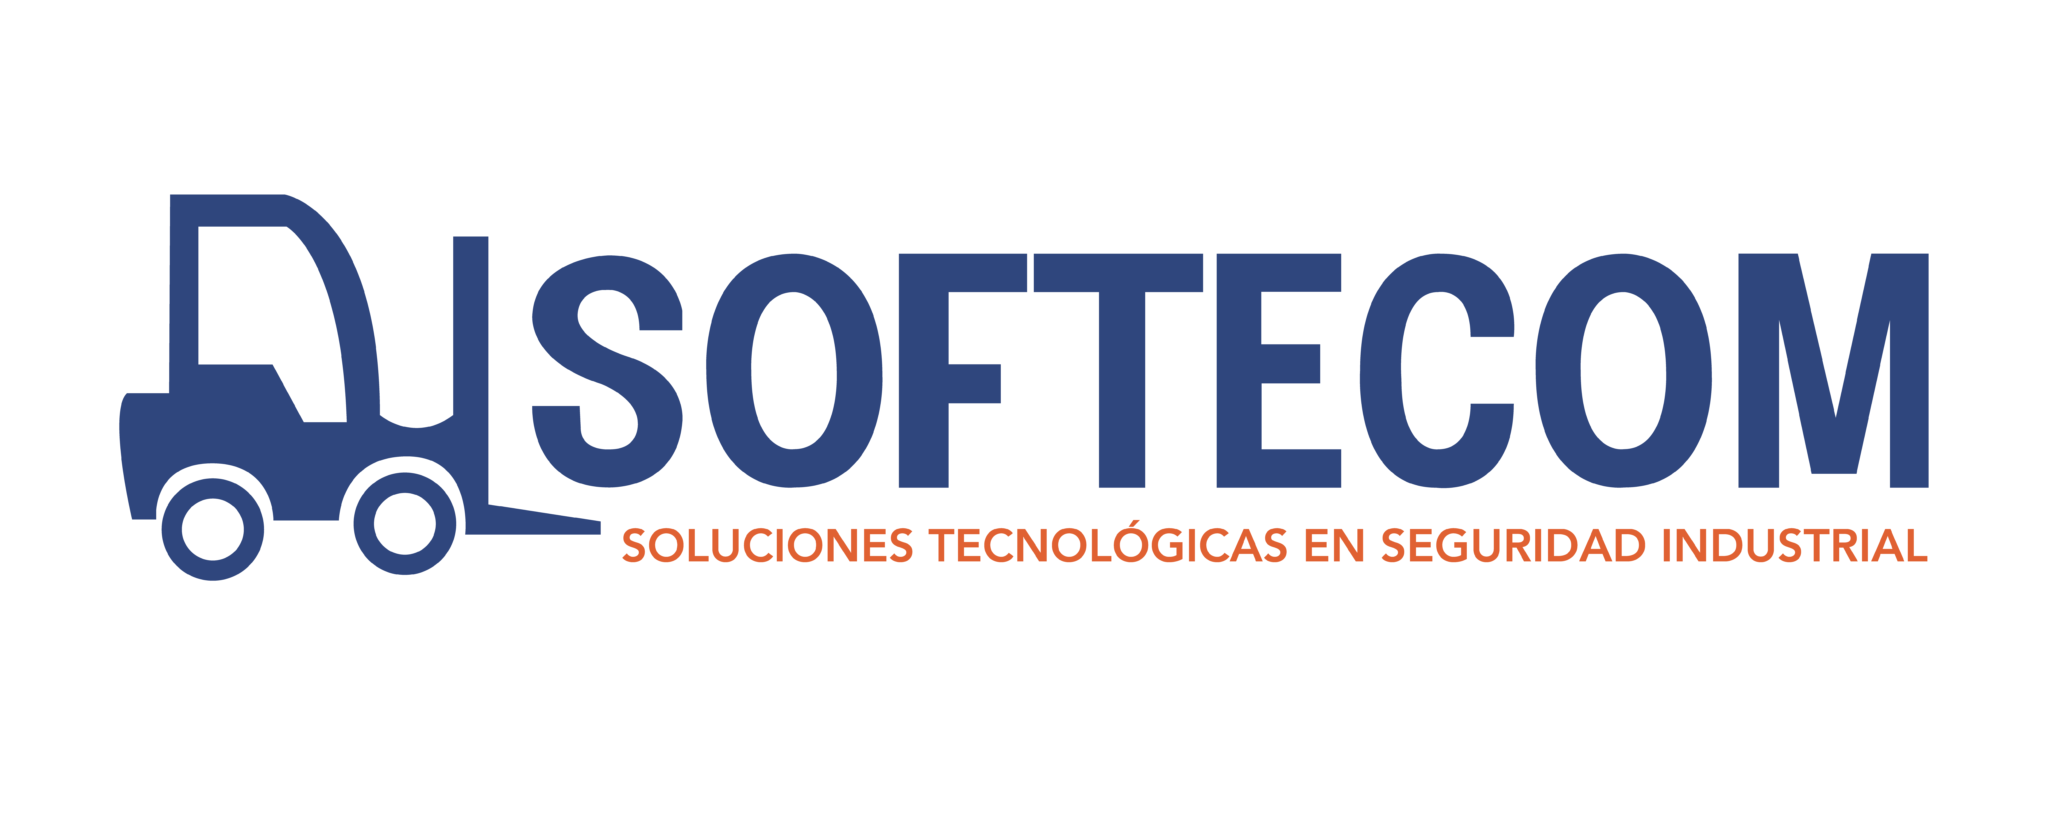 Logo Softecom Feria